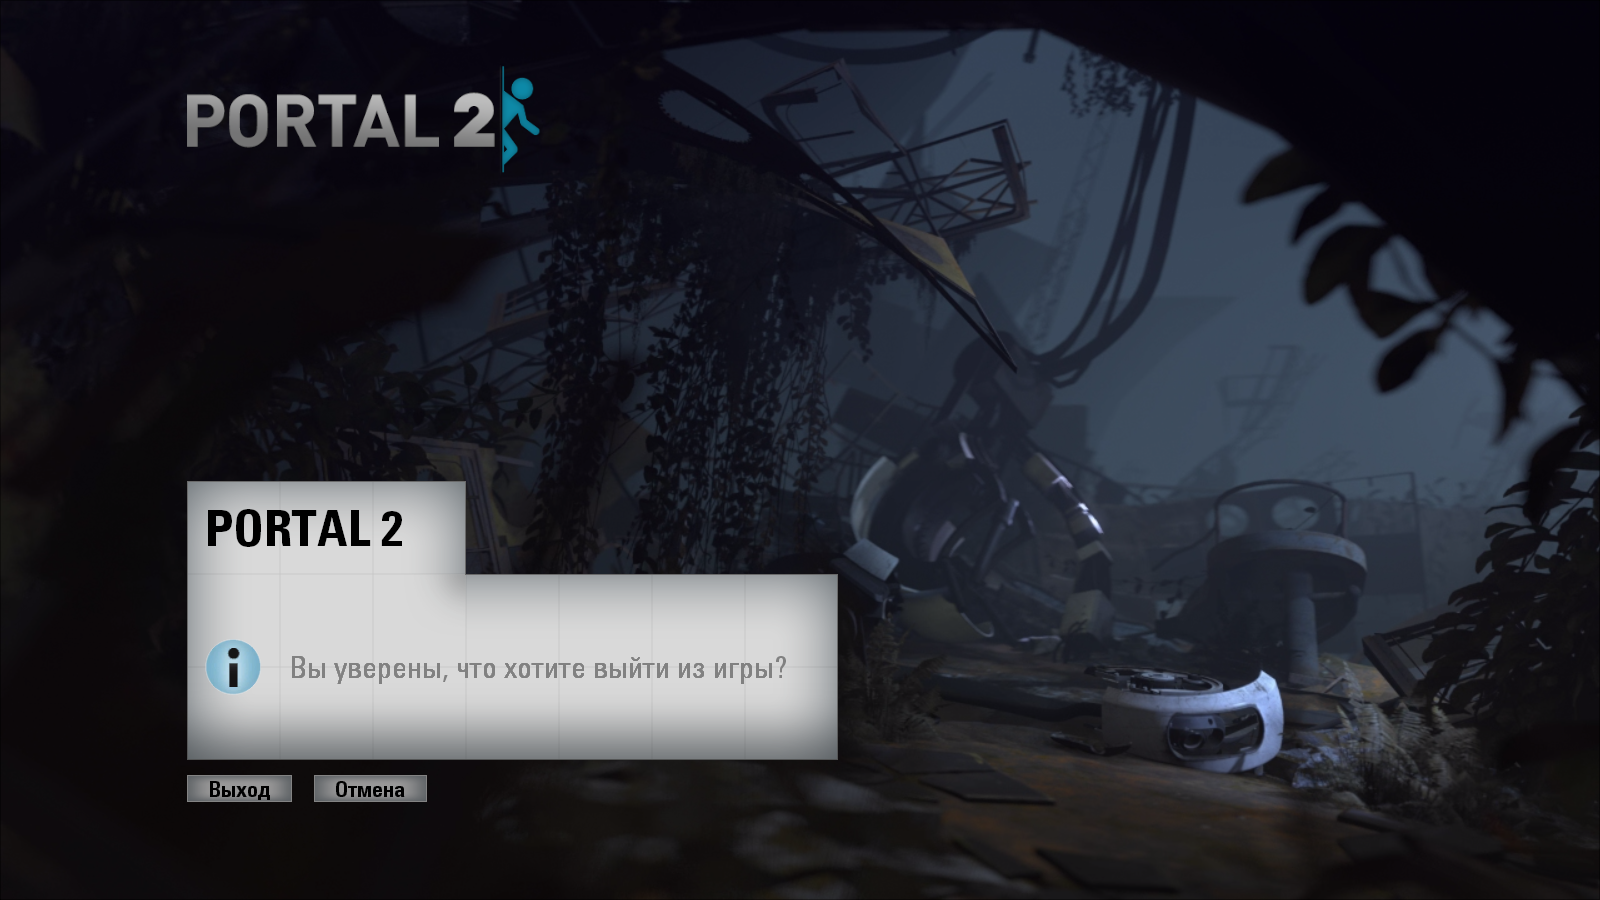 Portal 2 co op one pc фото 54